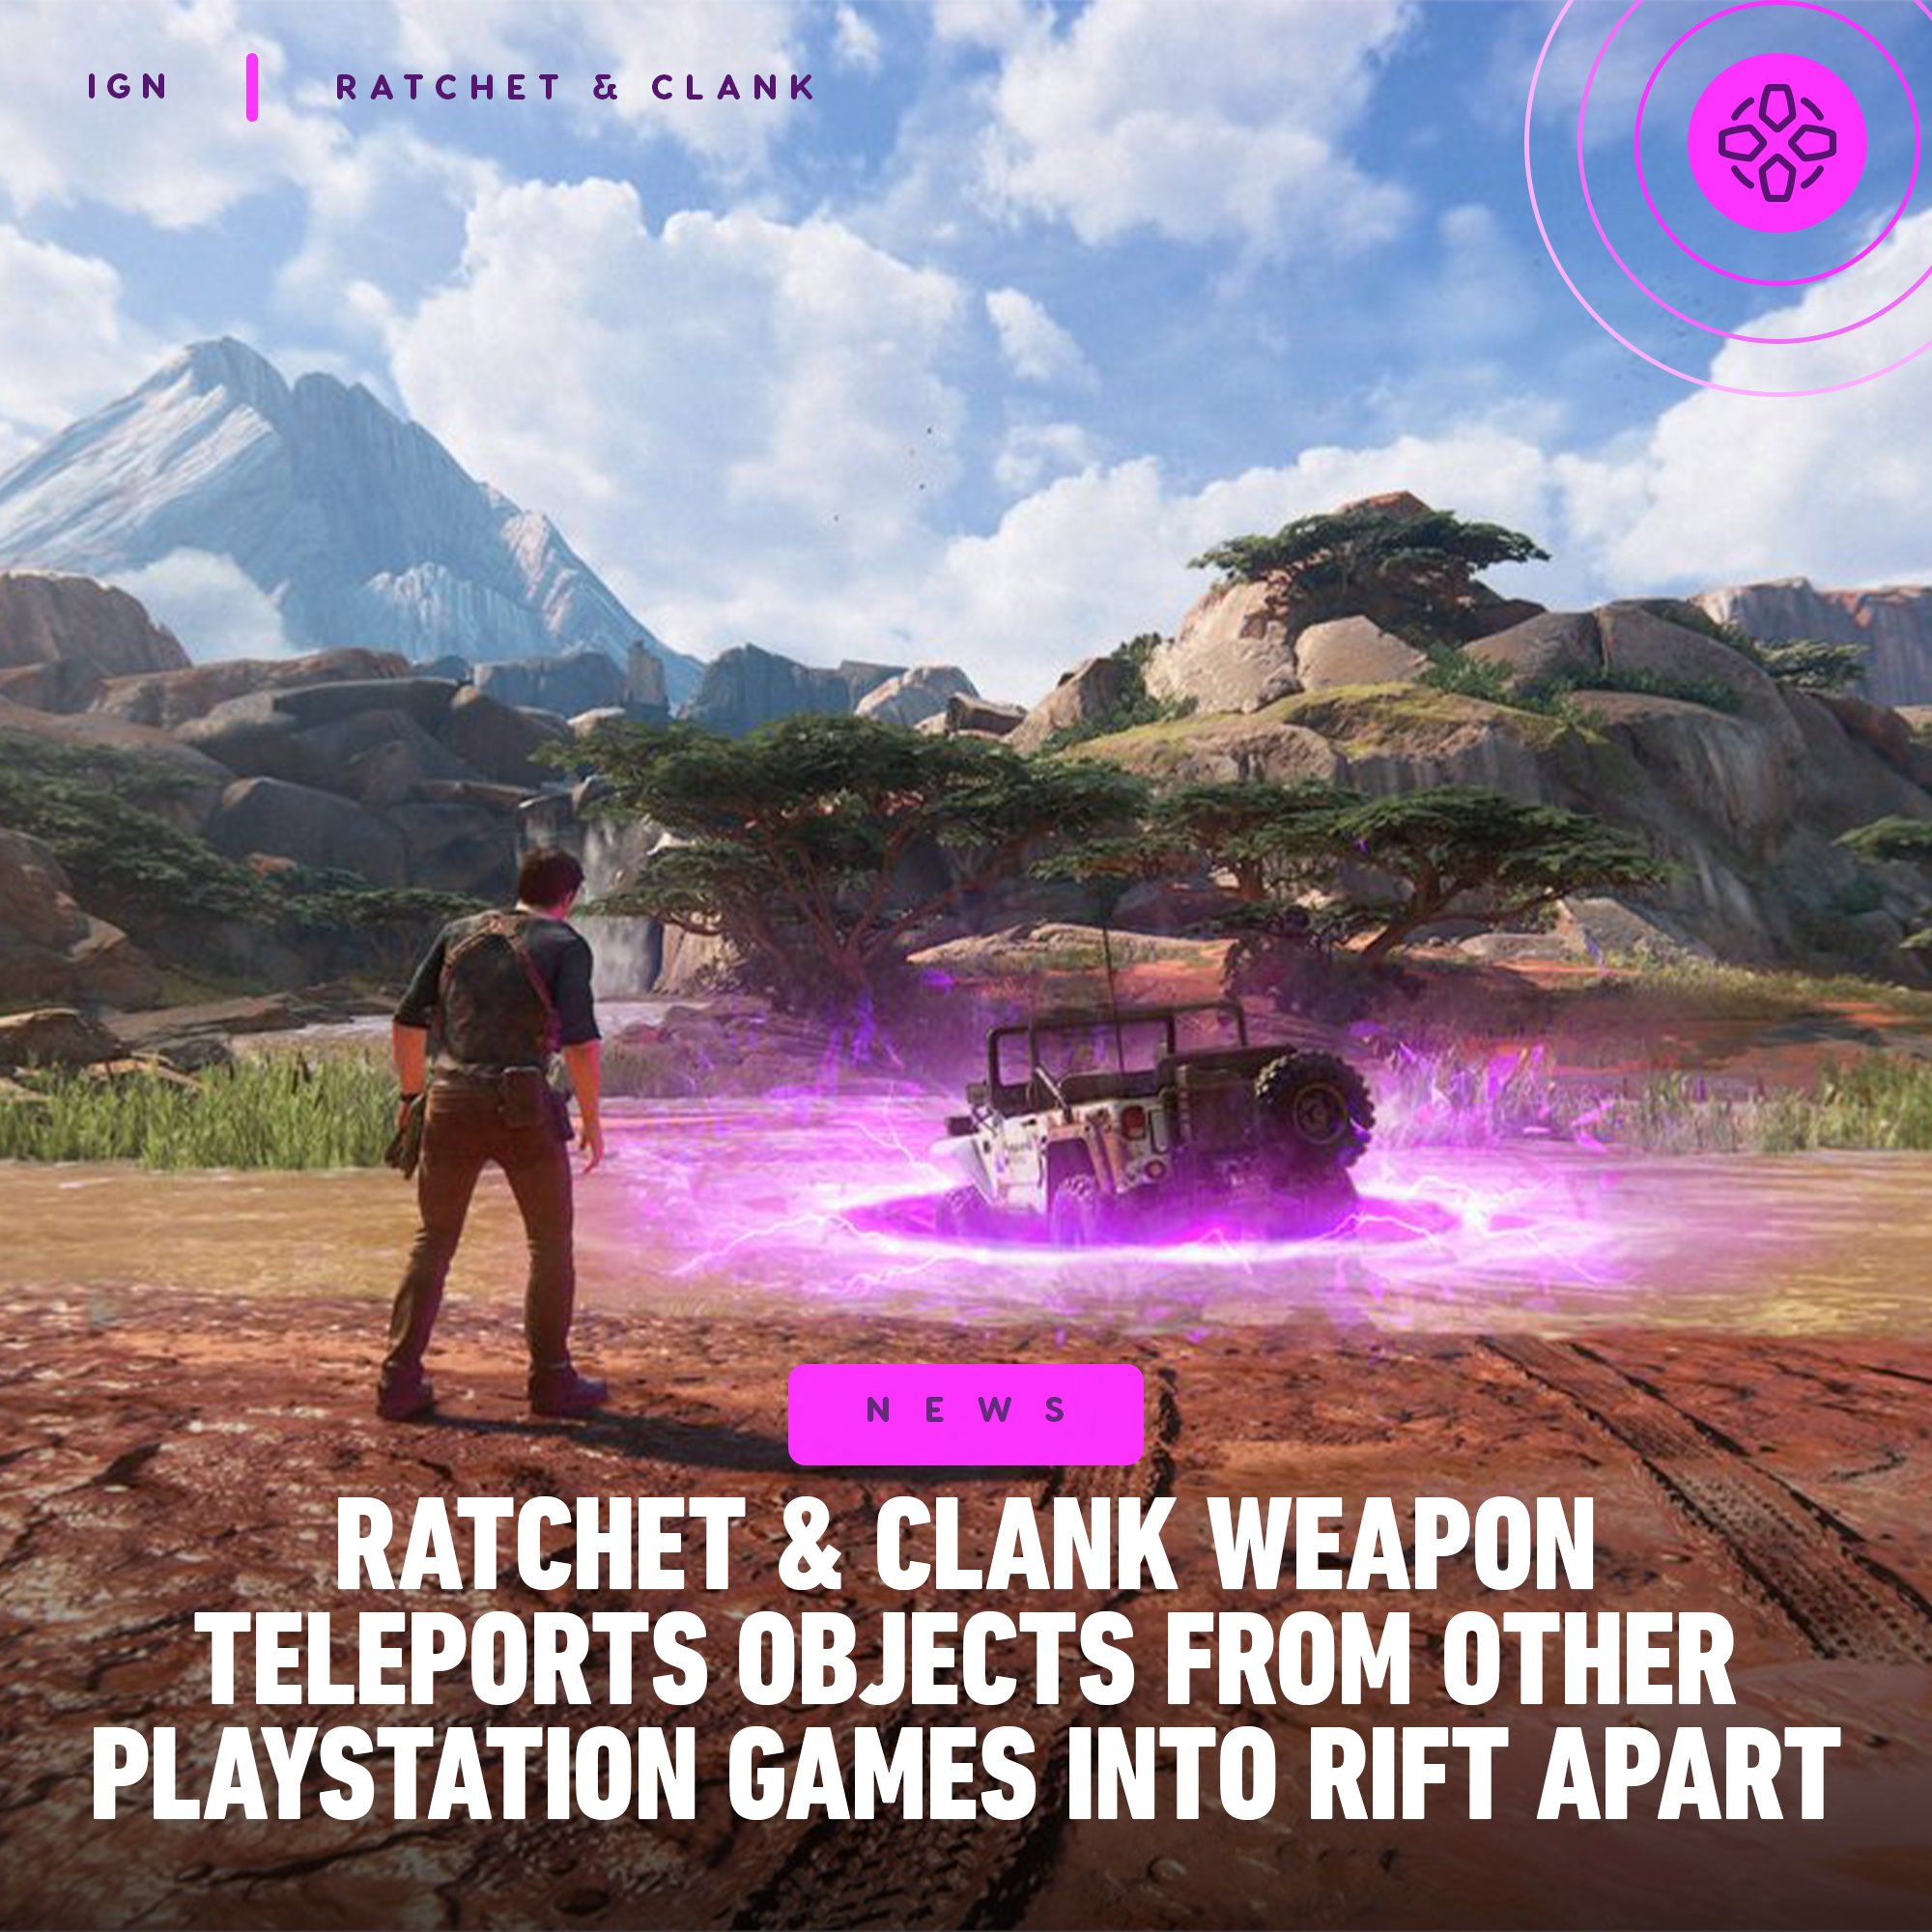 Ratchet & Clank - IGN